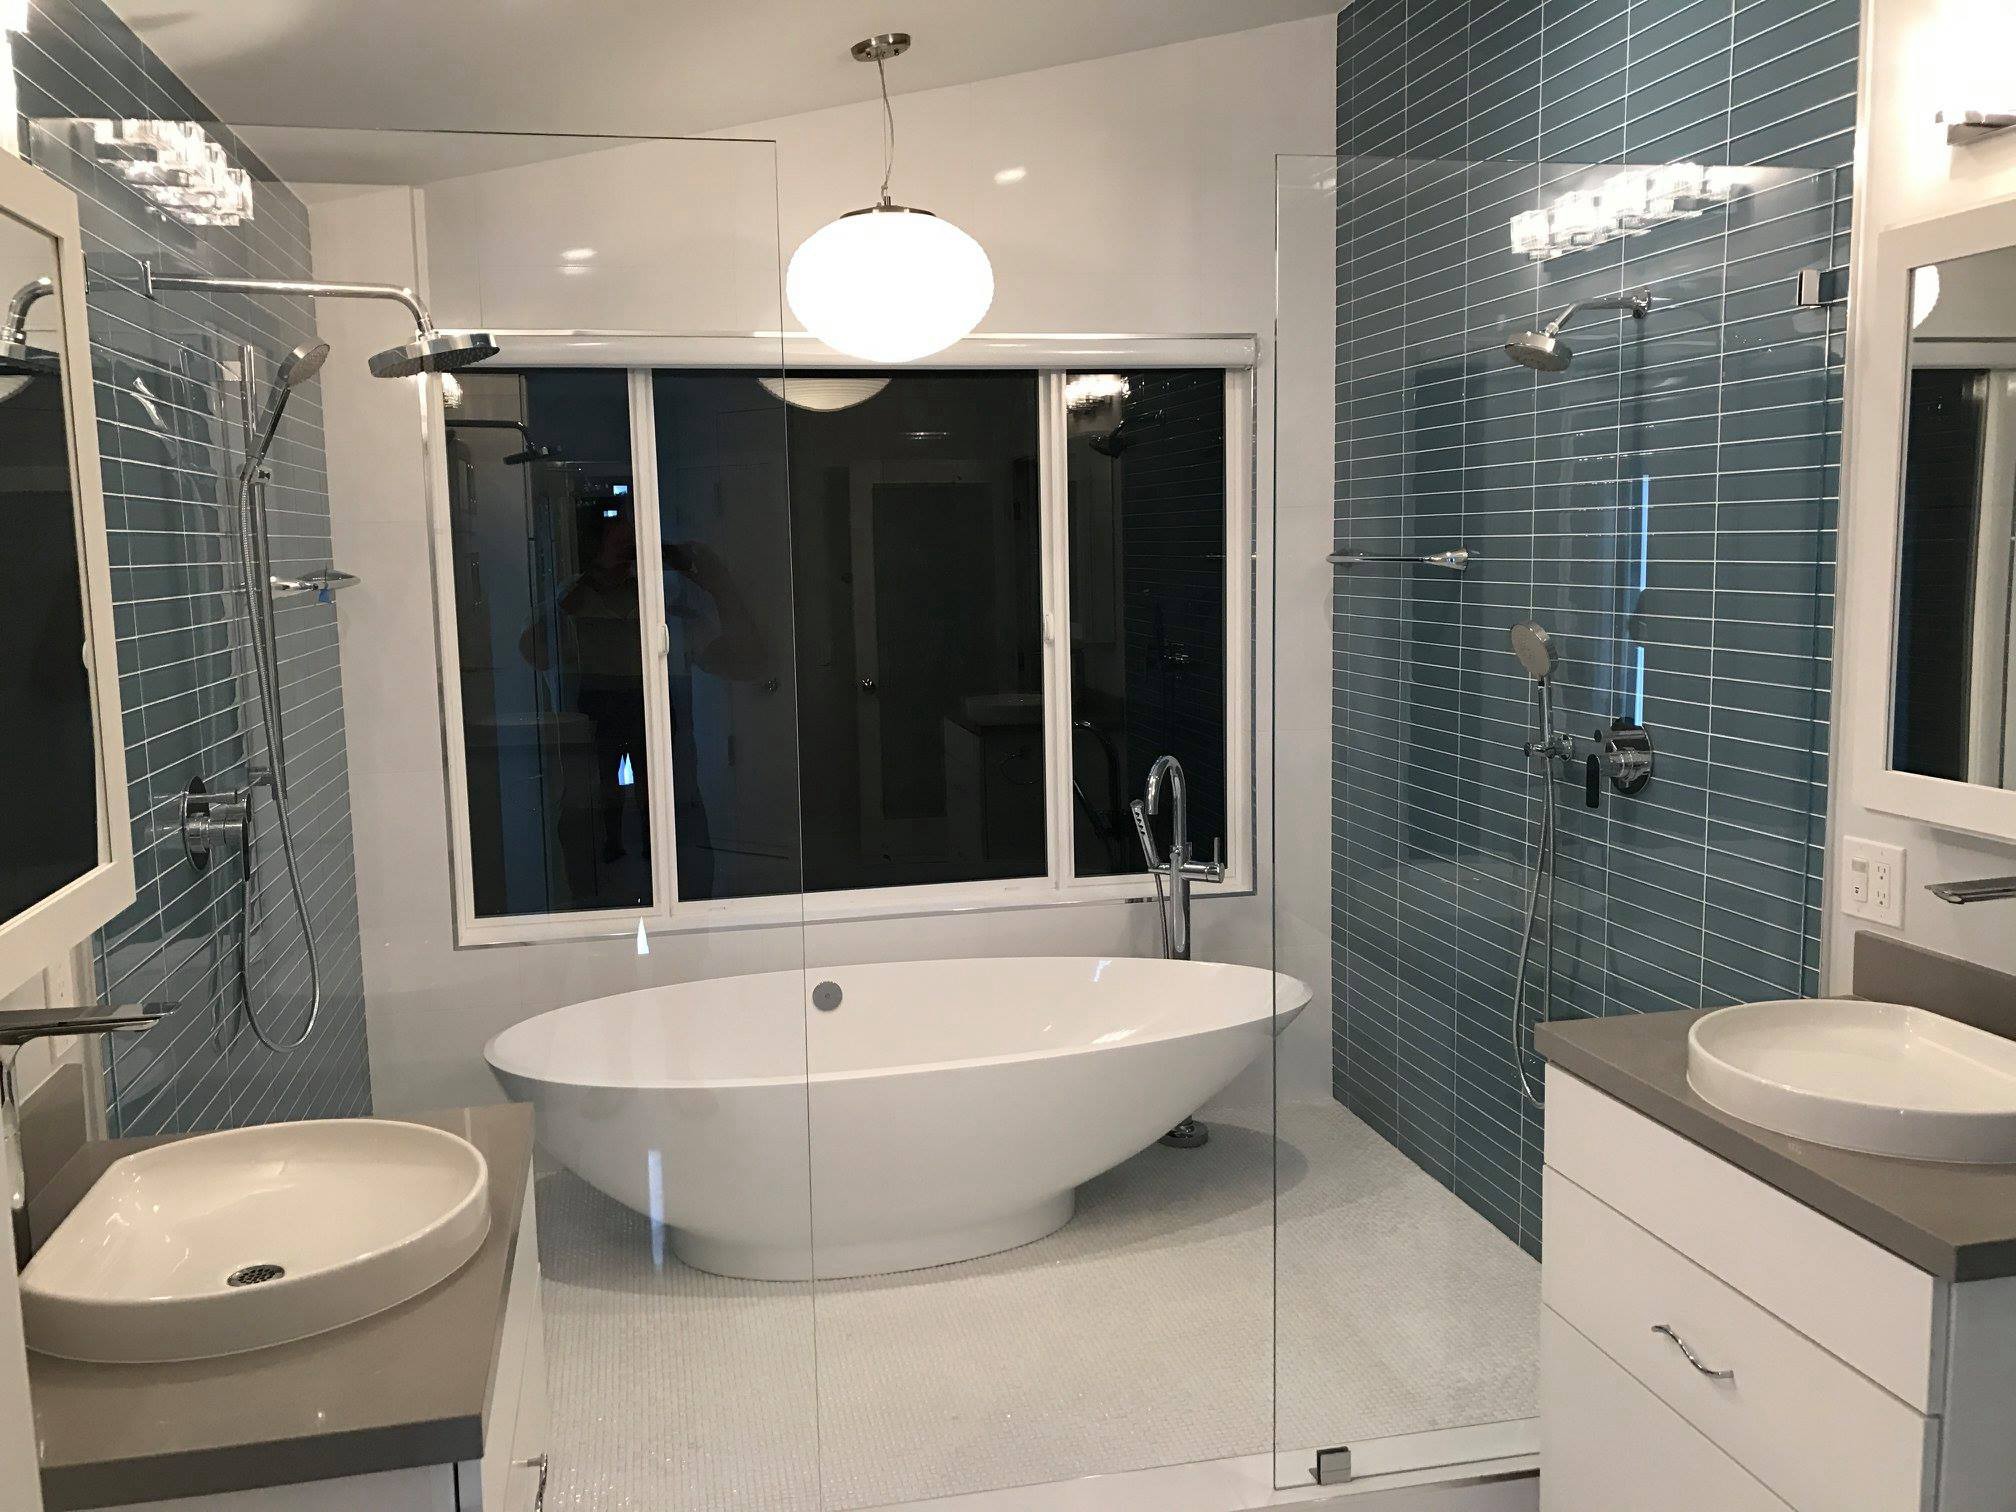 Bathroom Remodel Challenge!  Traditional bathroom, Shower shampoo holder,  Bathrooms remodel